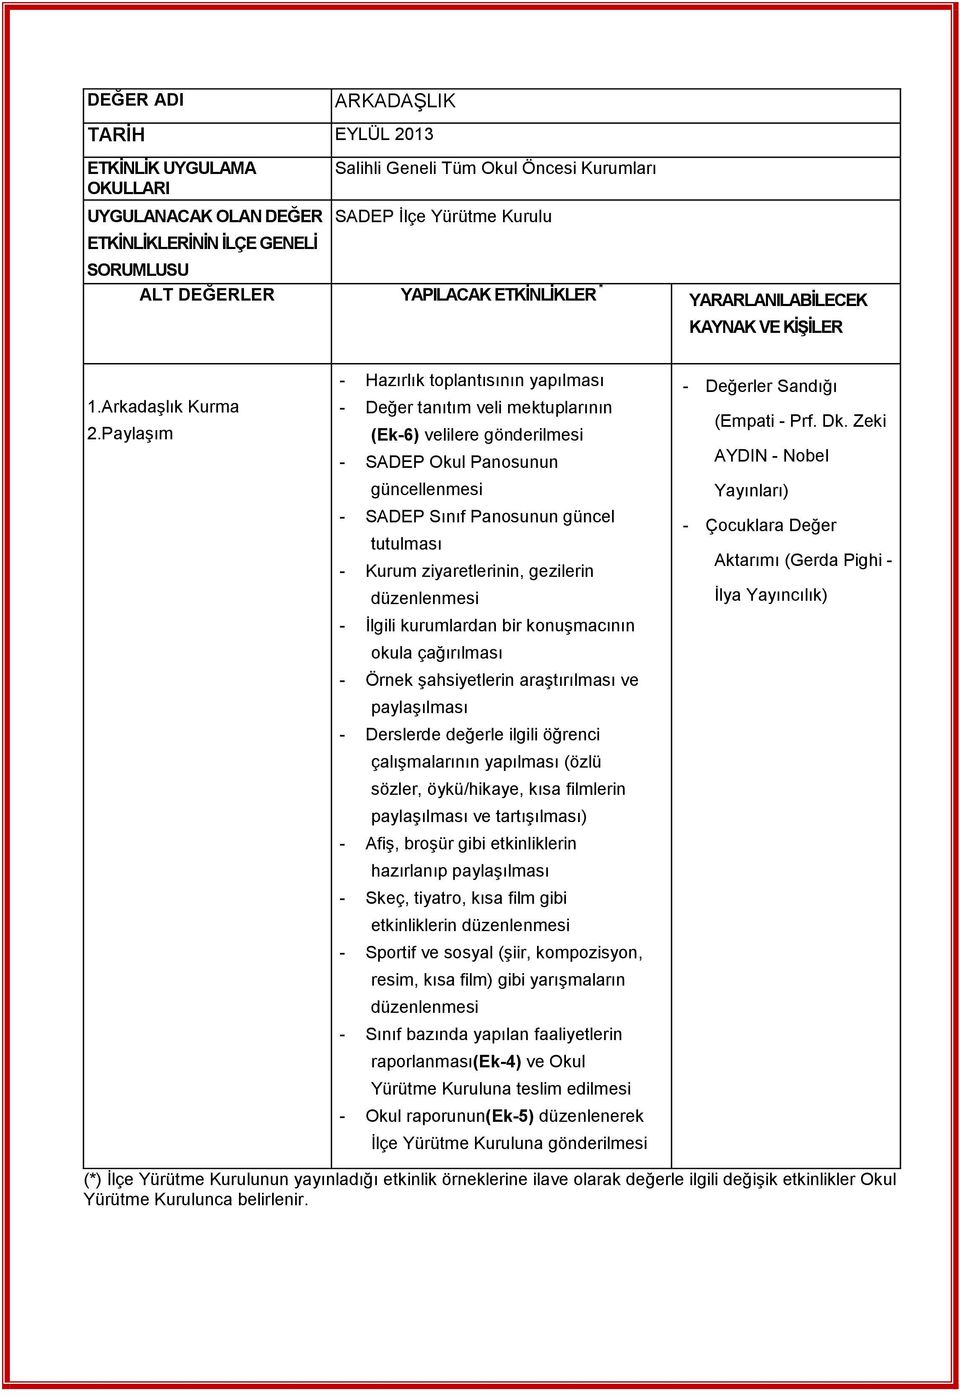 Paylaşım - Hazırlık toplantısının yapılması - Değer tanıtım veli mektuplarının (Ek-6) velilere gönderilmesi - SADEP Okul Panosunun güncellenmesi - SADEP Sınıf Panosunun güncel tutulması - Kurum